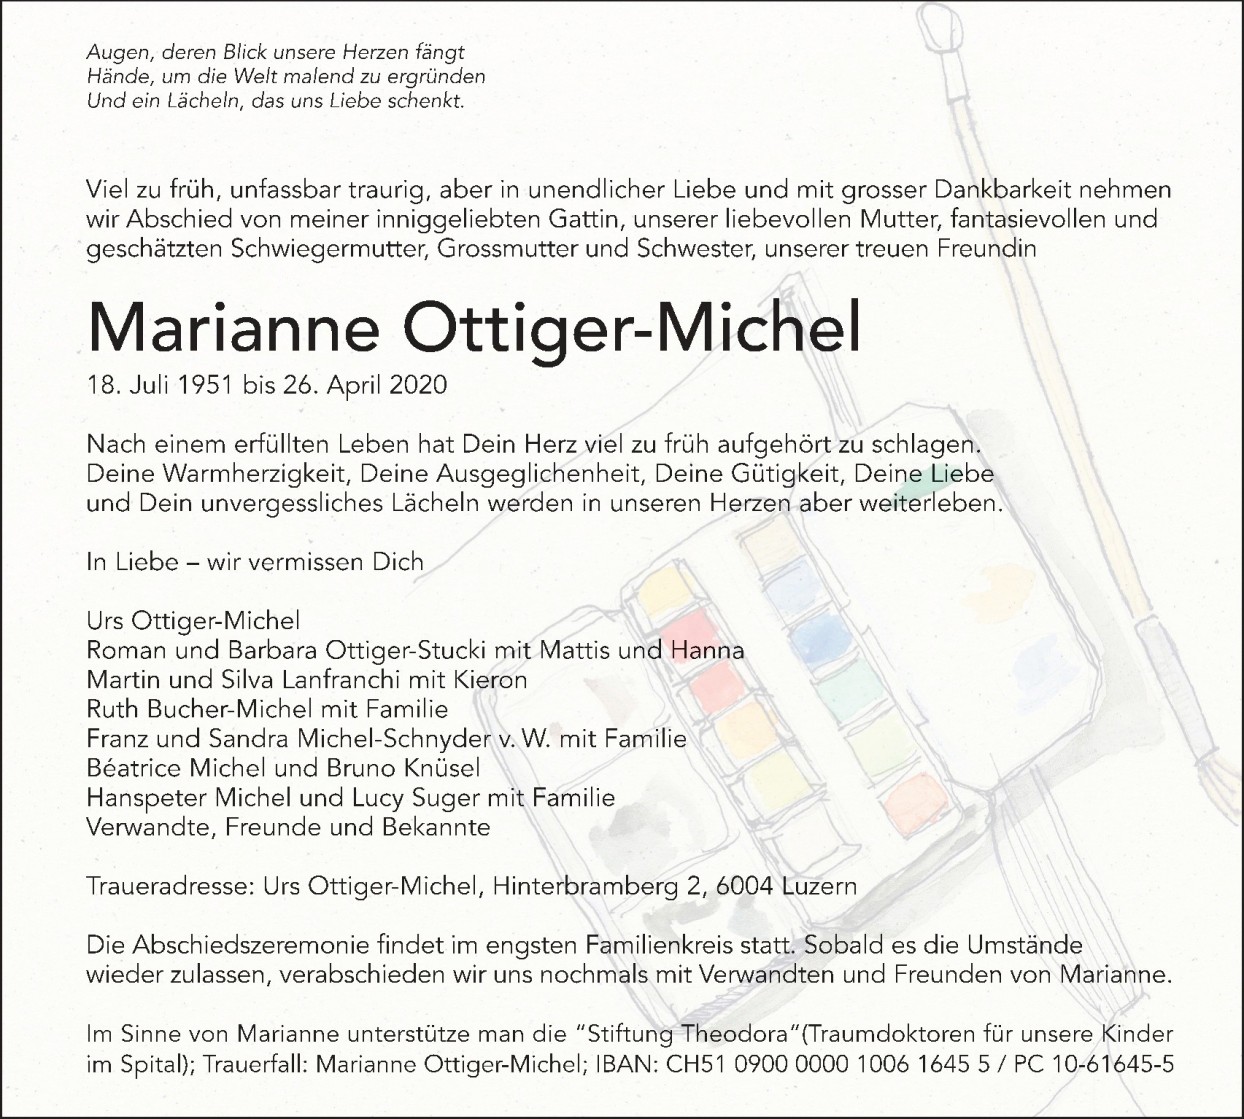 Marianne Ottiger-Michel